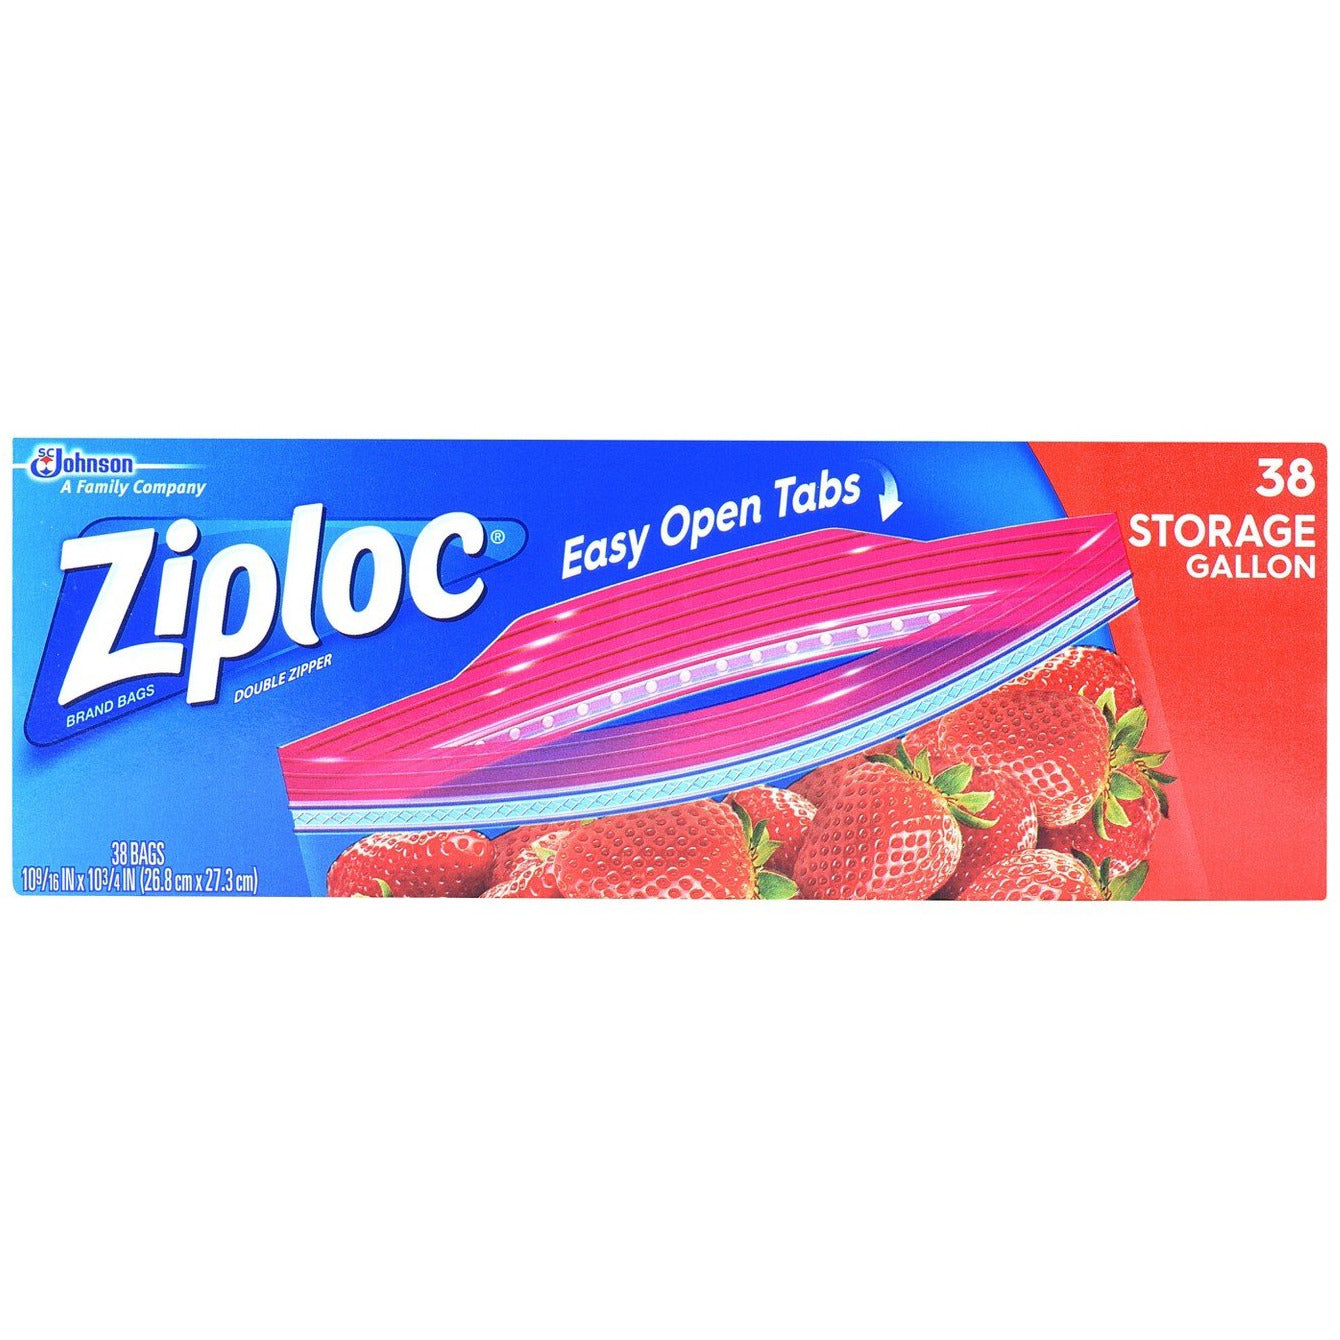 Ziploc Easy Open Gallon Freezer Bags 38 Ct